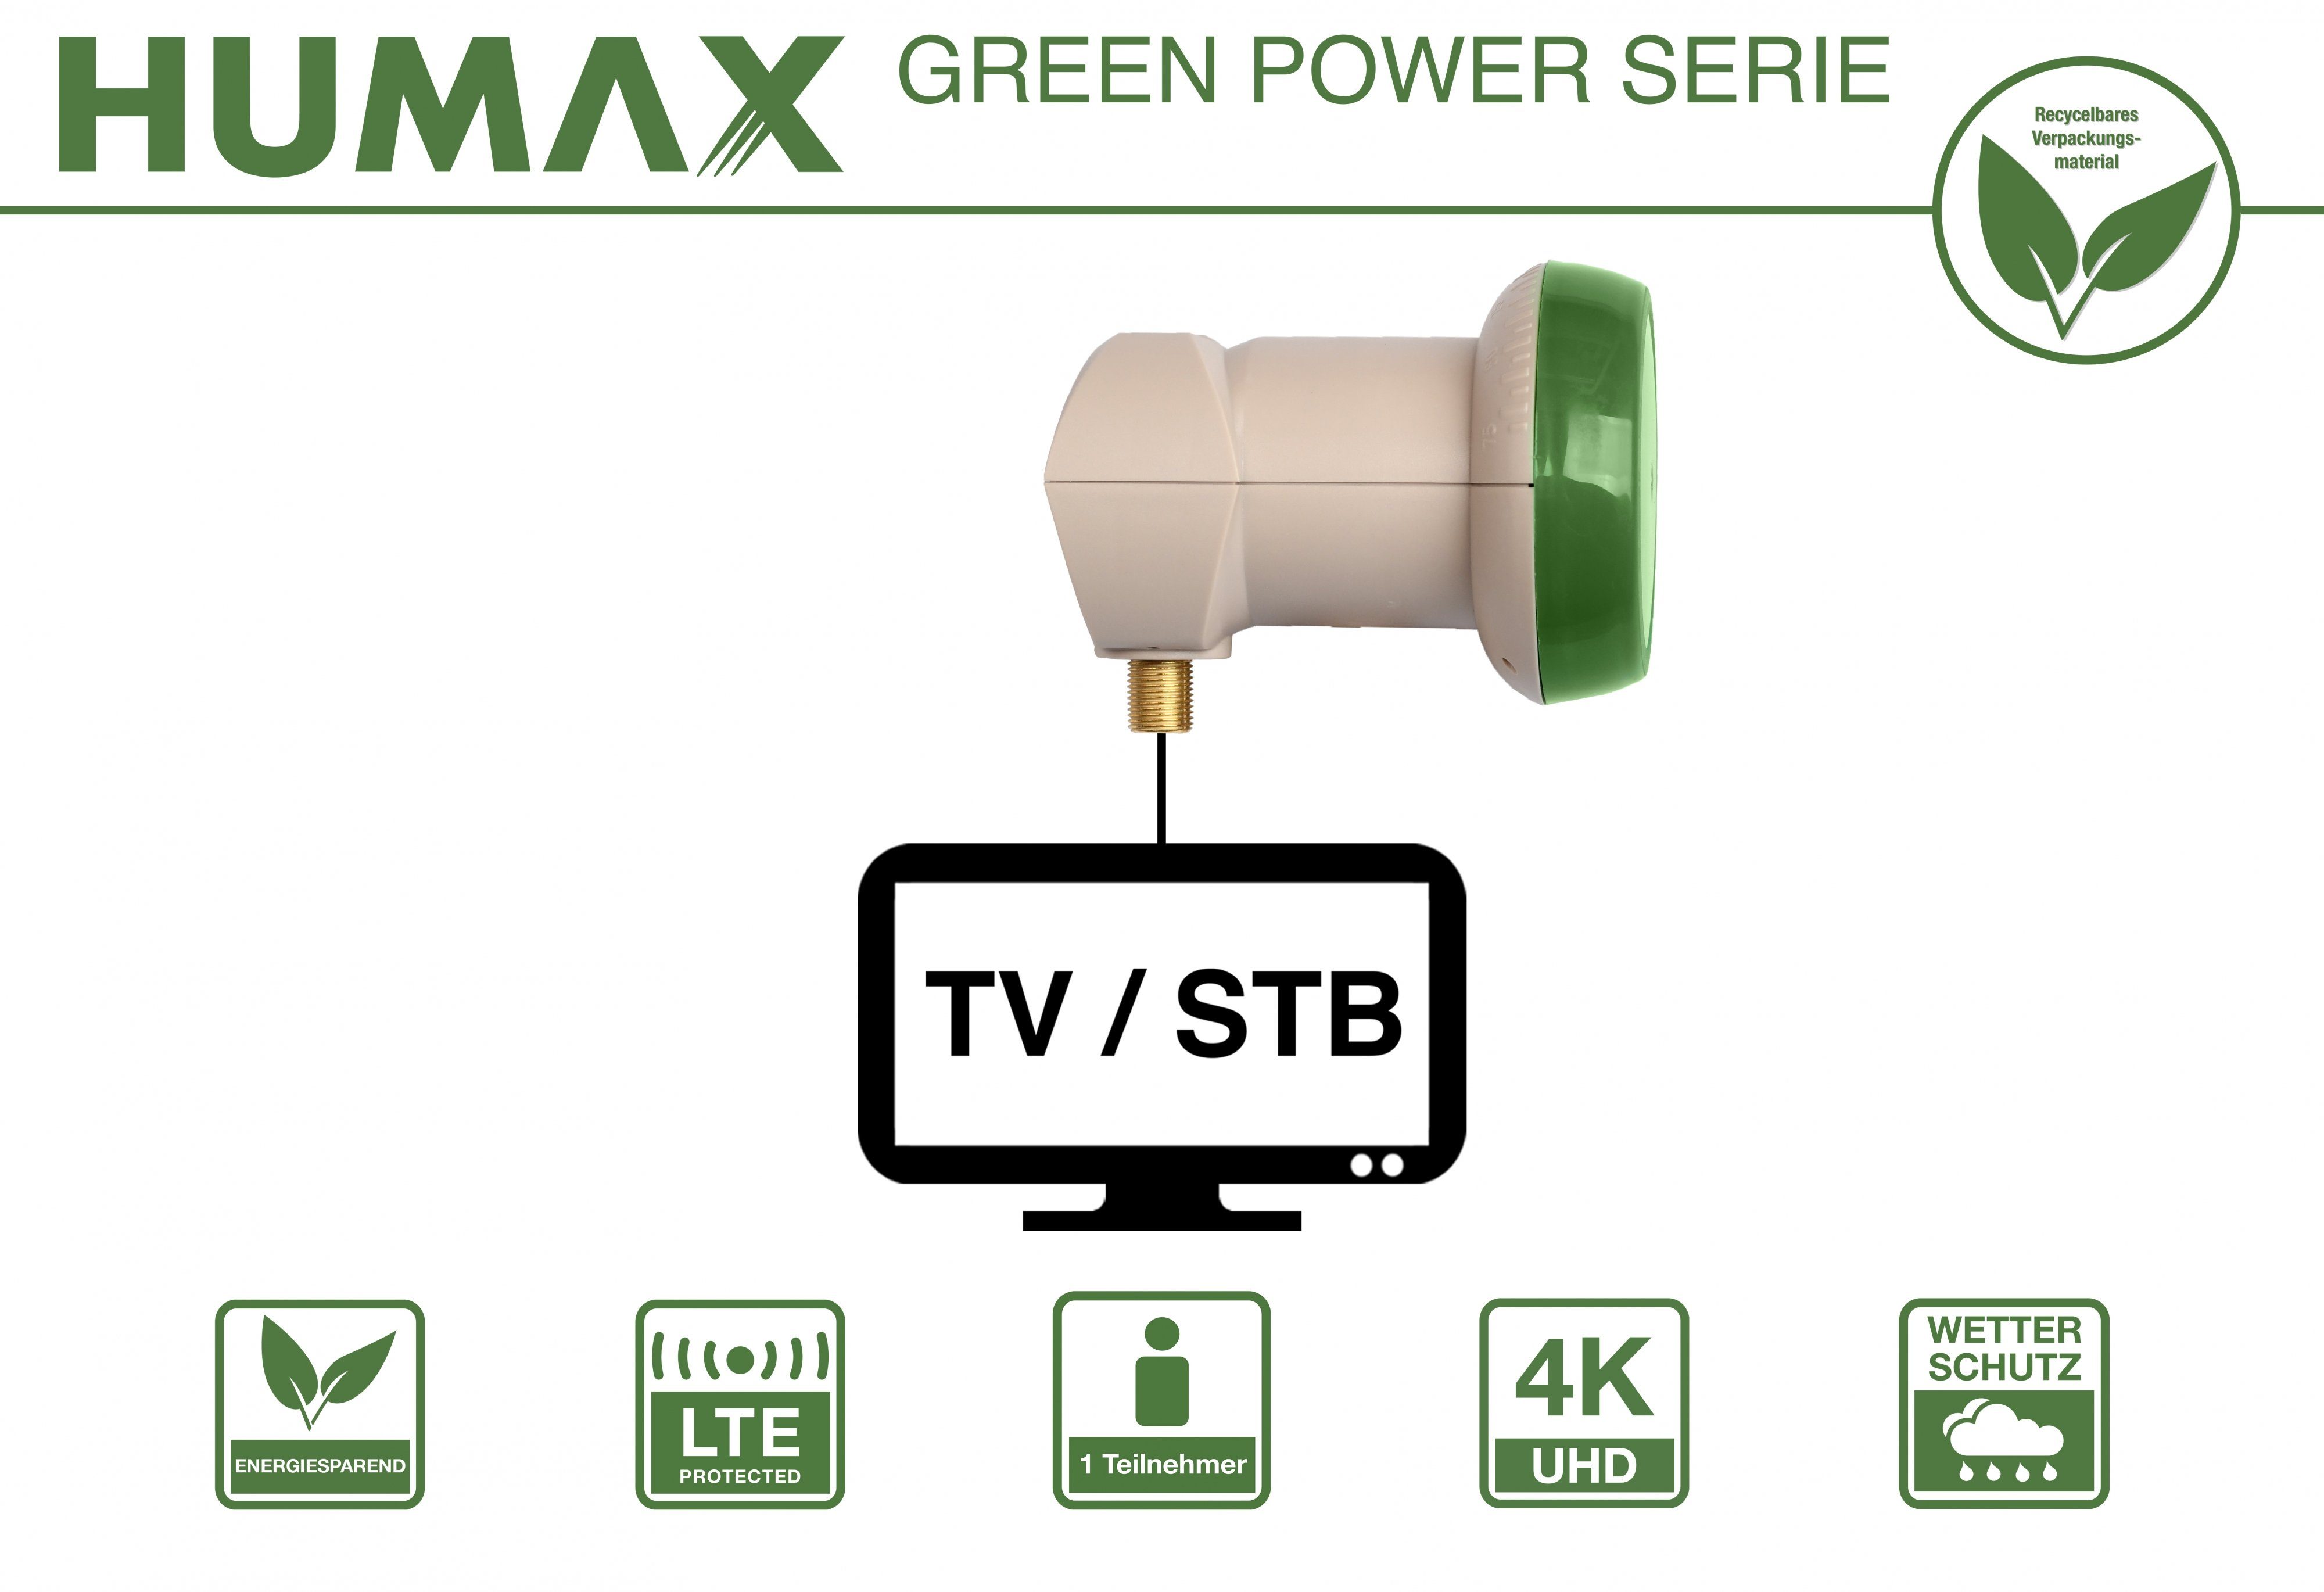 LTE Green Power Filter) Teilnehmer, 1 313, Universal-Single-LNB (für LNB Humax Verpackung, Umweltfreundliche stromsparend Single